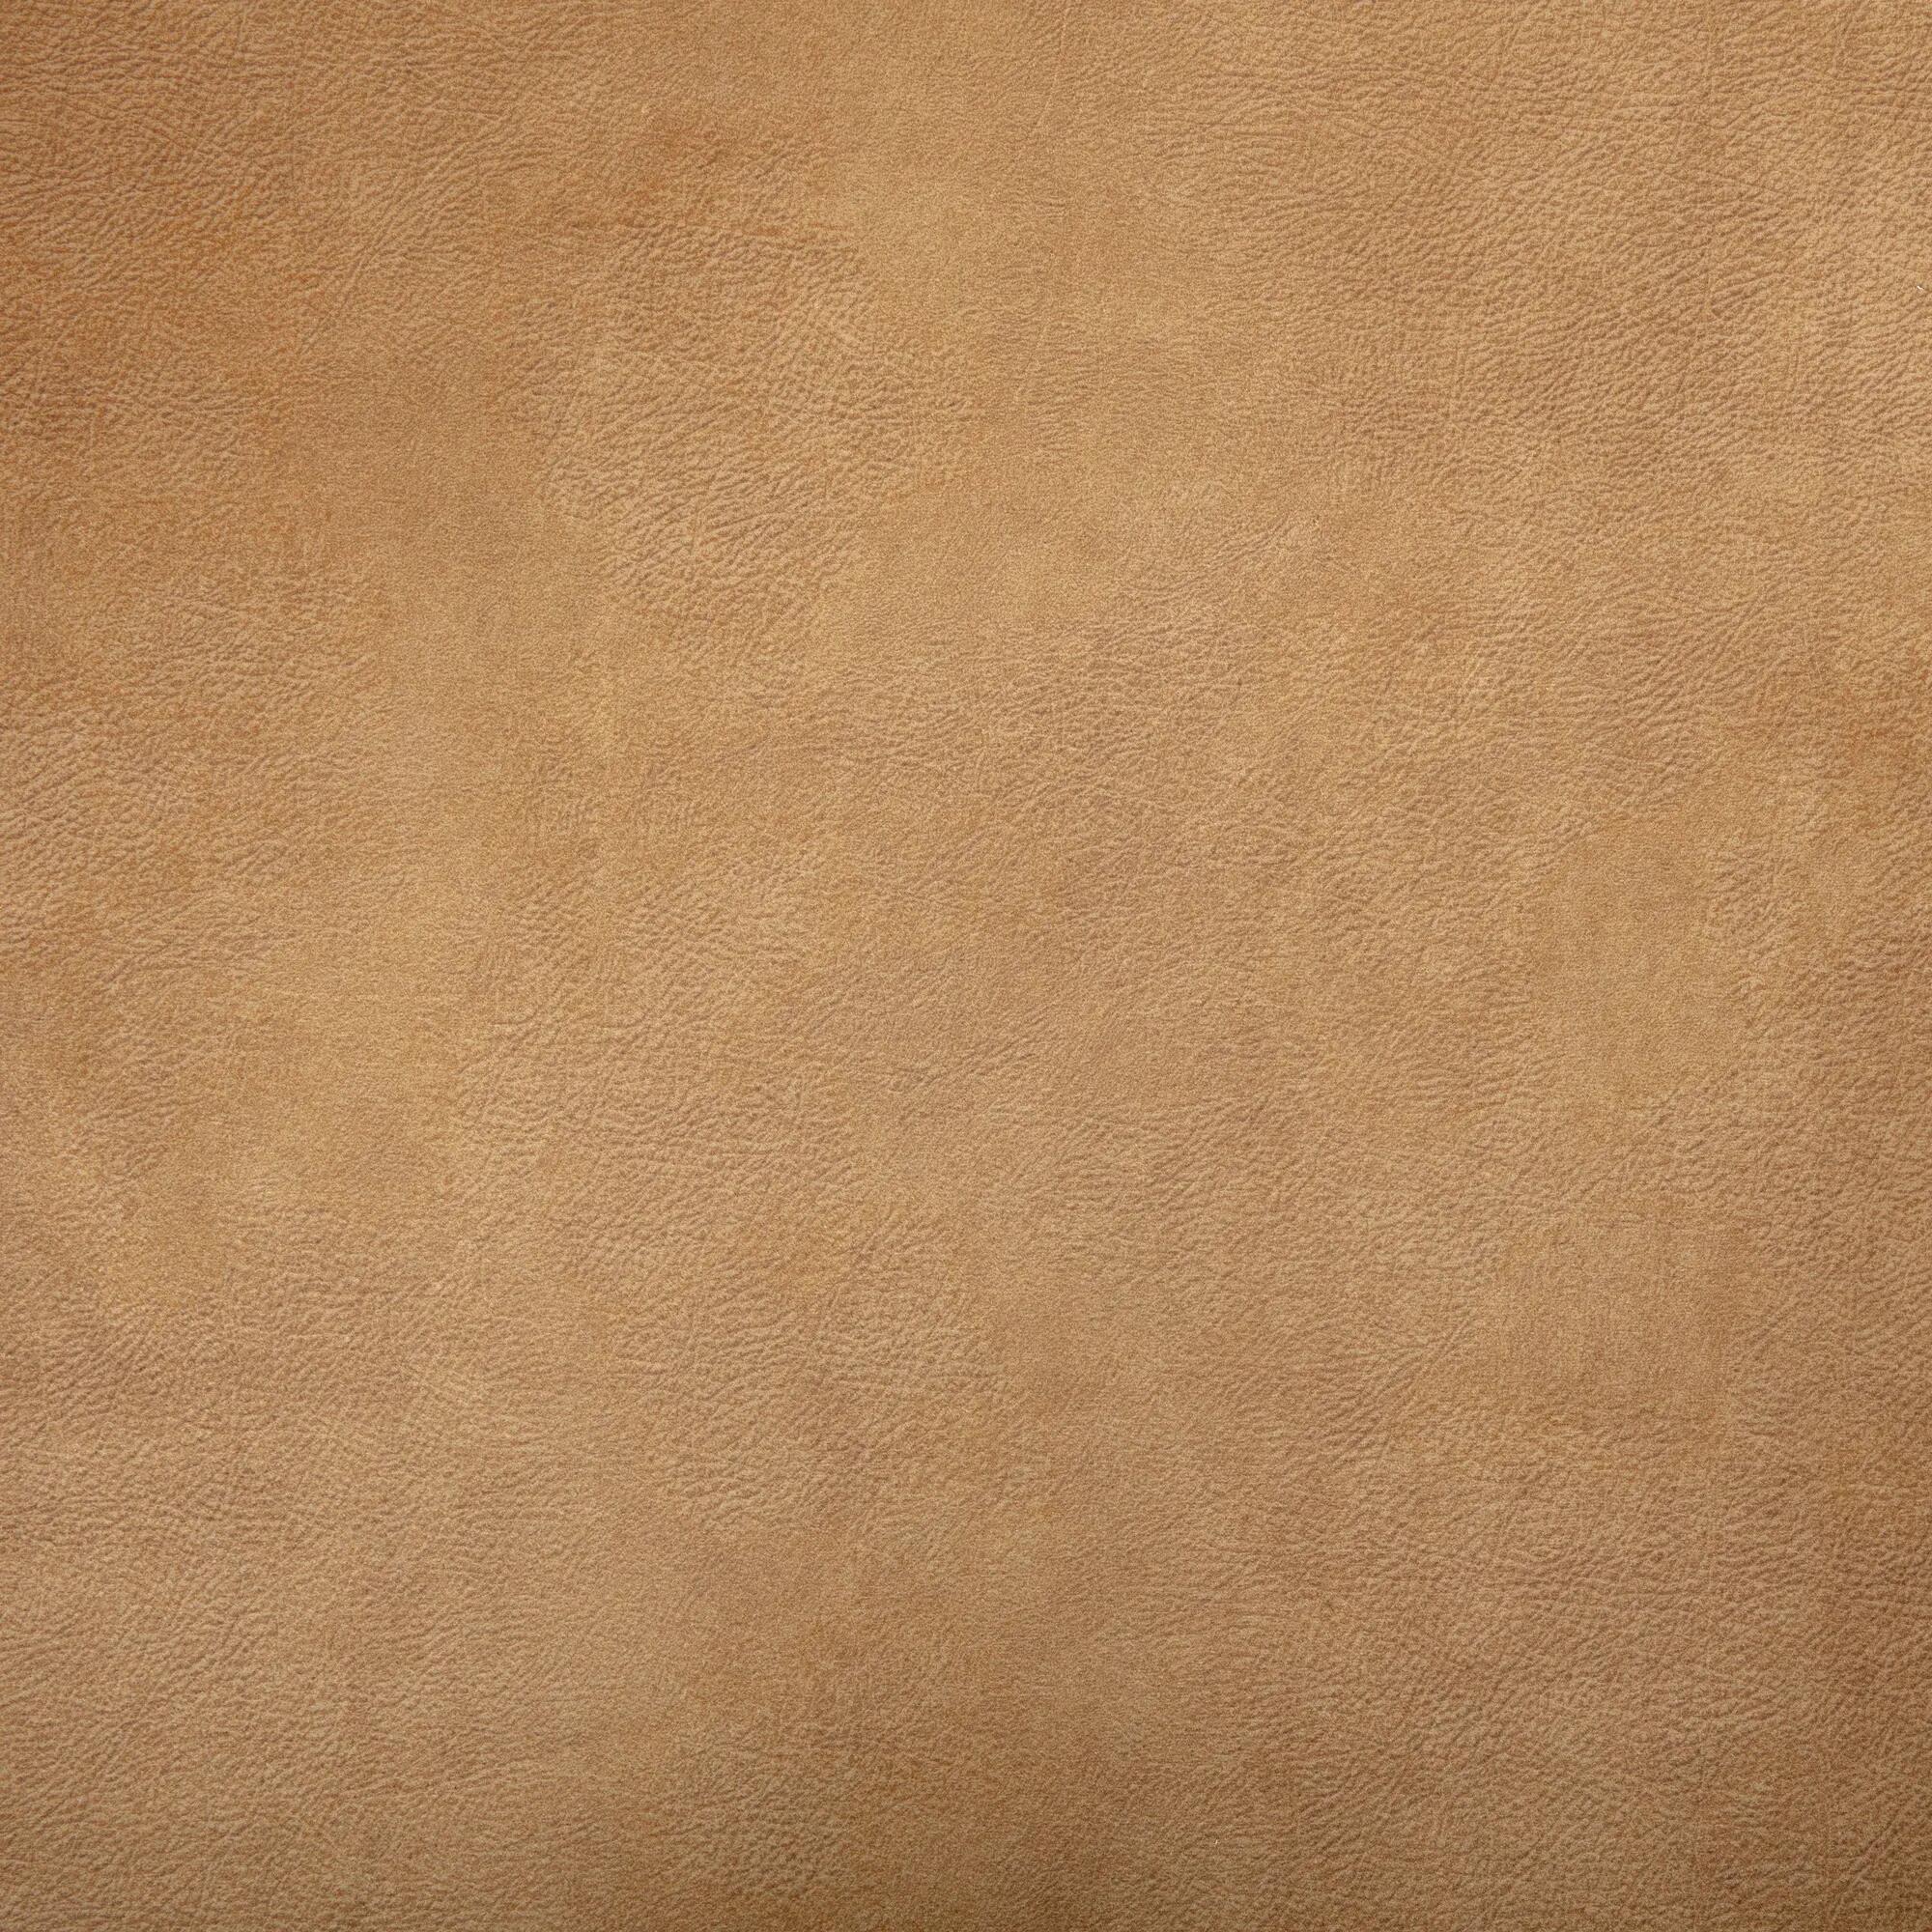 Tela al corte tapicería imitación piel vison café ancho 140 cm